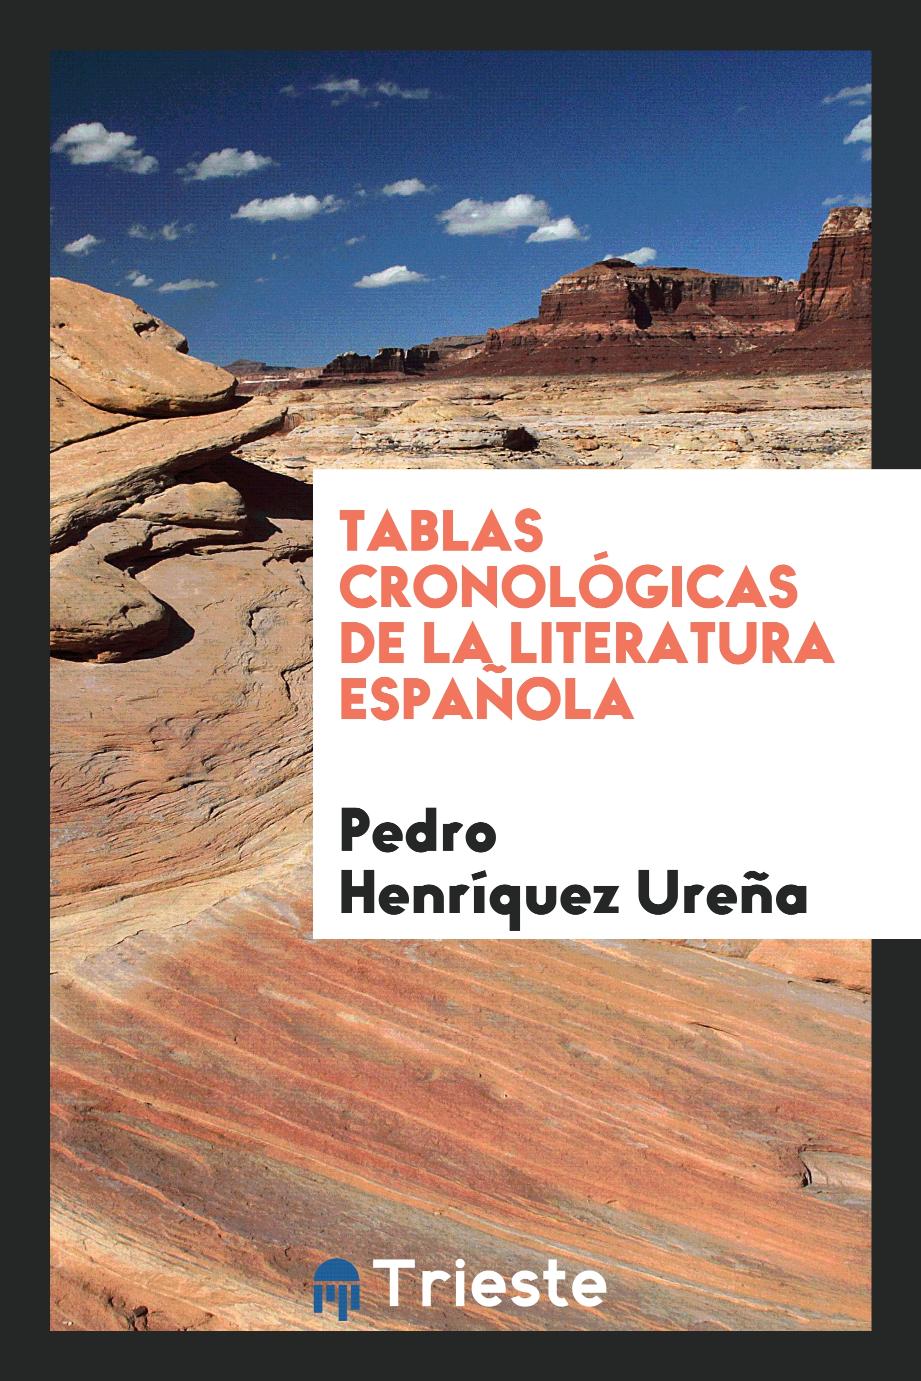 Pedro Henríquez Ureña - Tablas cronológicas de la literatura española